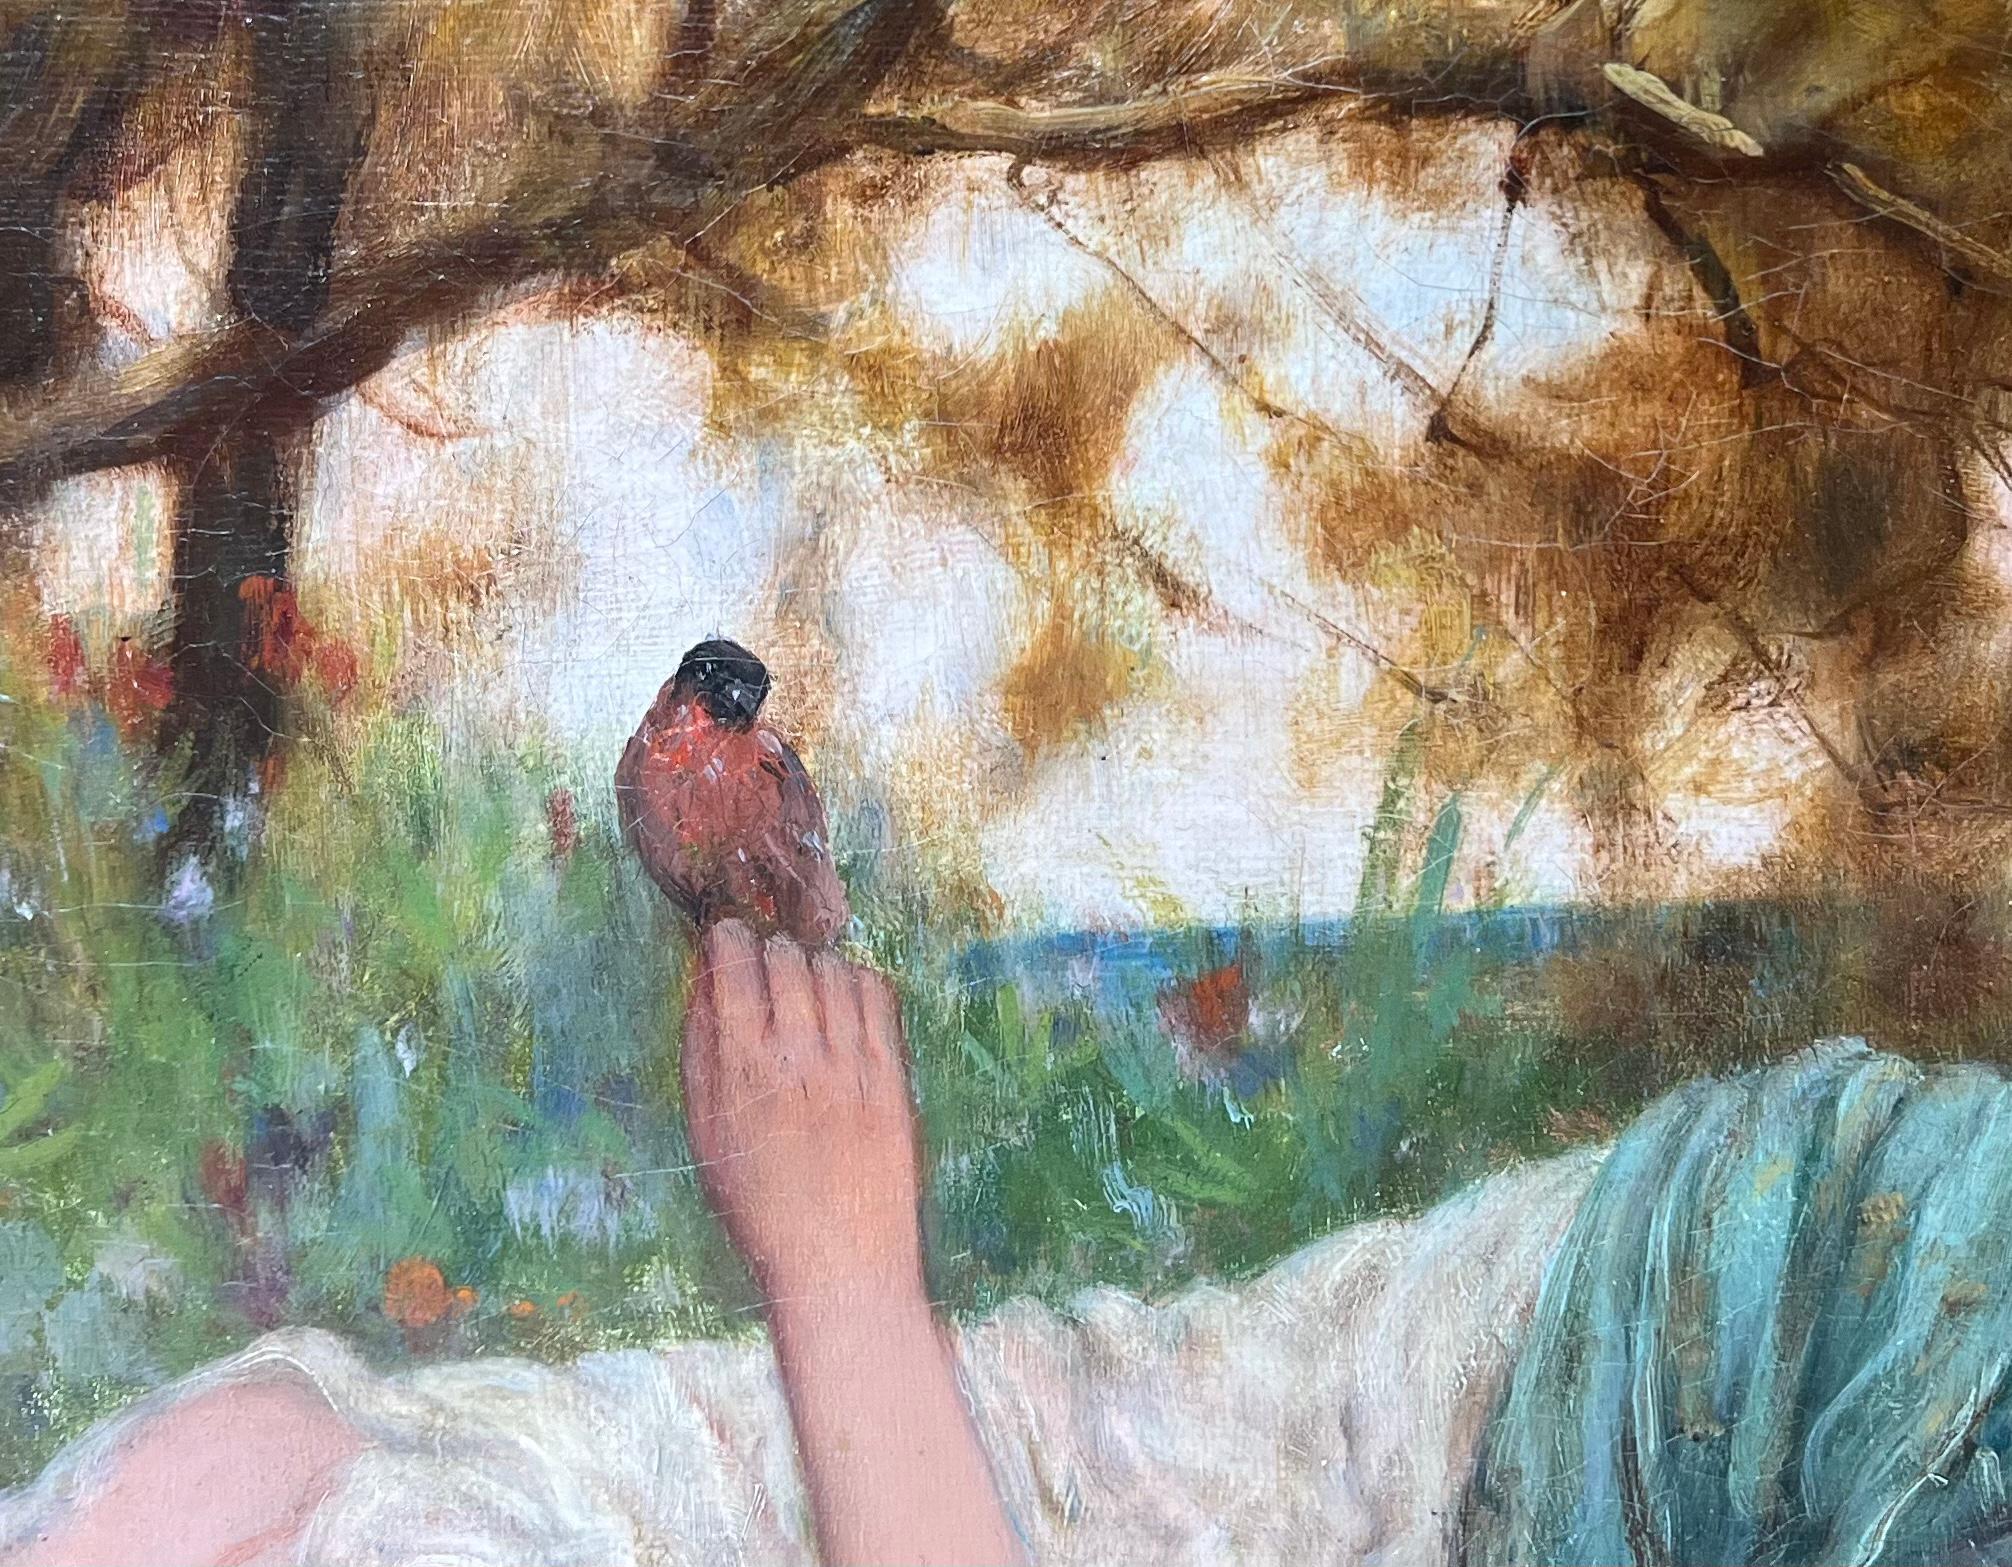 Neoklassizistisches liegendes GRECIANisches Mädchen mit BIRD aus Vorraphealit, das eine BIRD hält (Akademisch), Painting, von Oliver Rhys